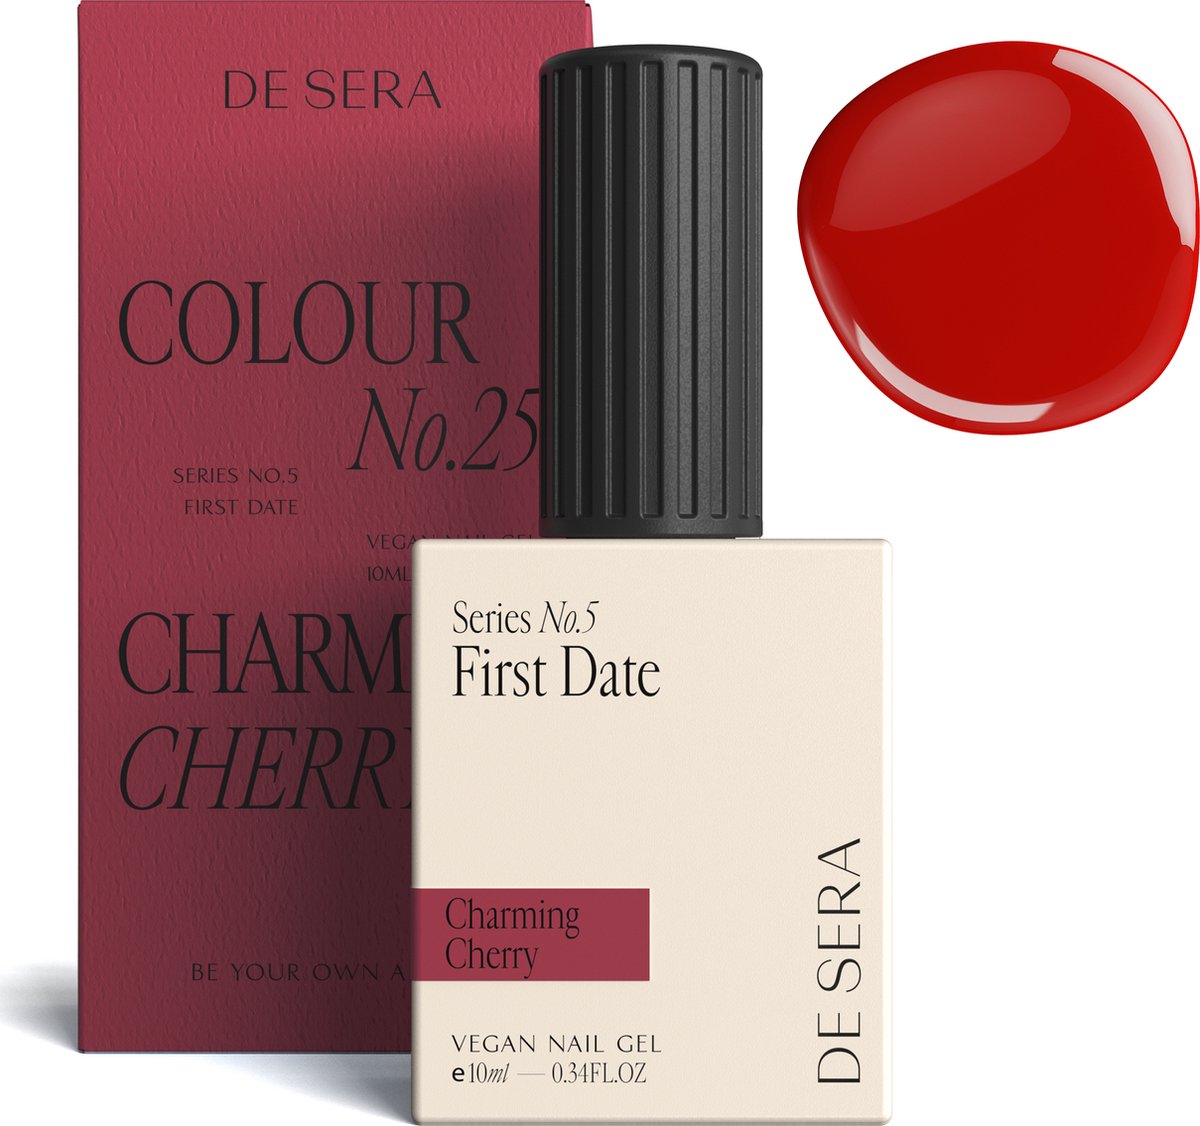 De Sera Gellak - Donker Roze Gel Nagellak - Roze - 10ML - Colour No. 25 Charming Cherry